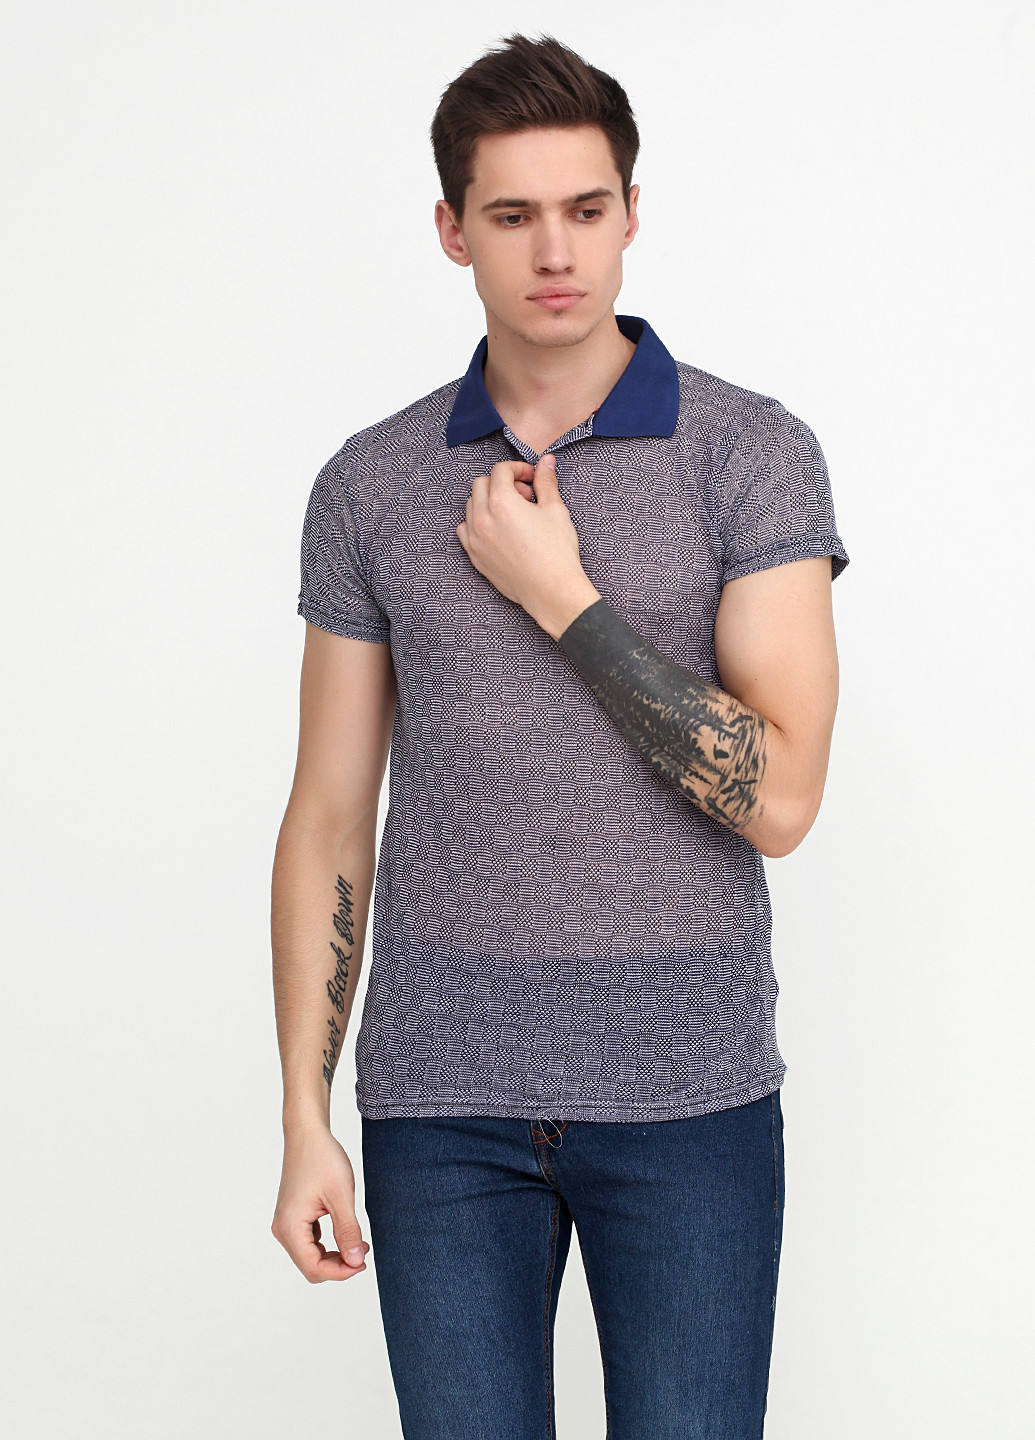 Джинсовая футболка-поло для мужчин Clartex с геометрическим узором